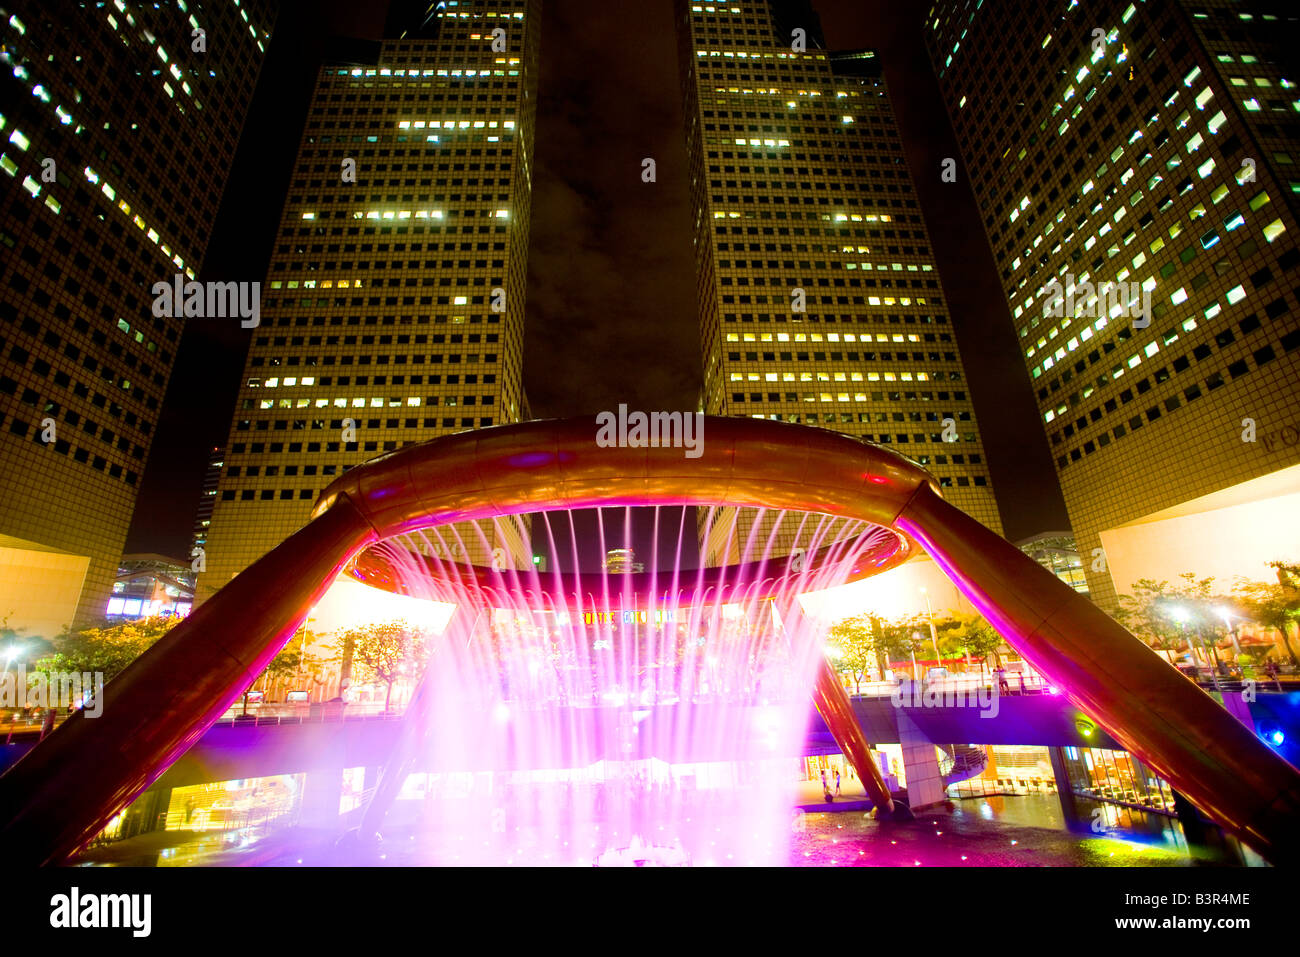 La fontaine de la richesse, Suntec city Singapore Banque D'Images